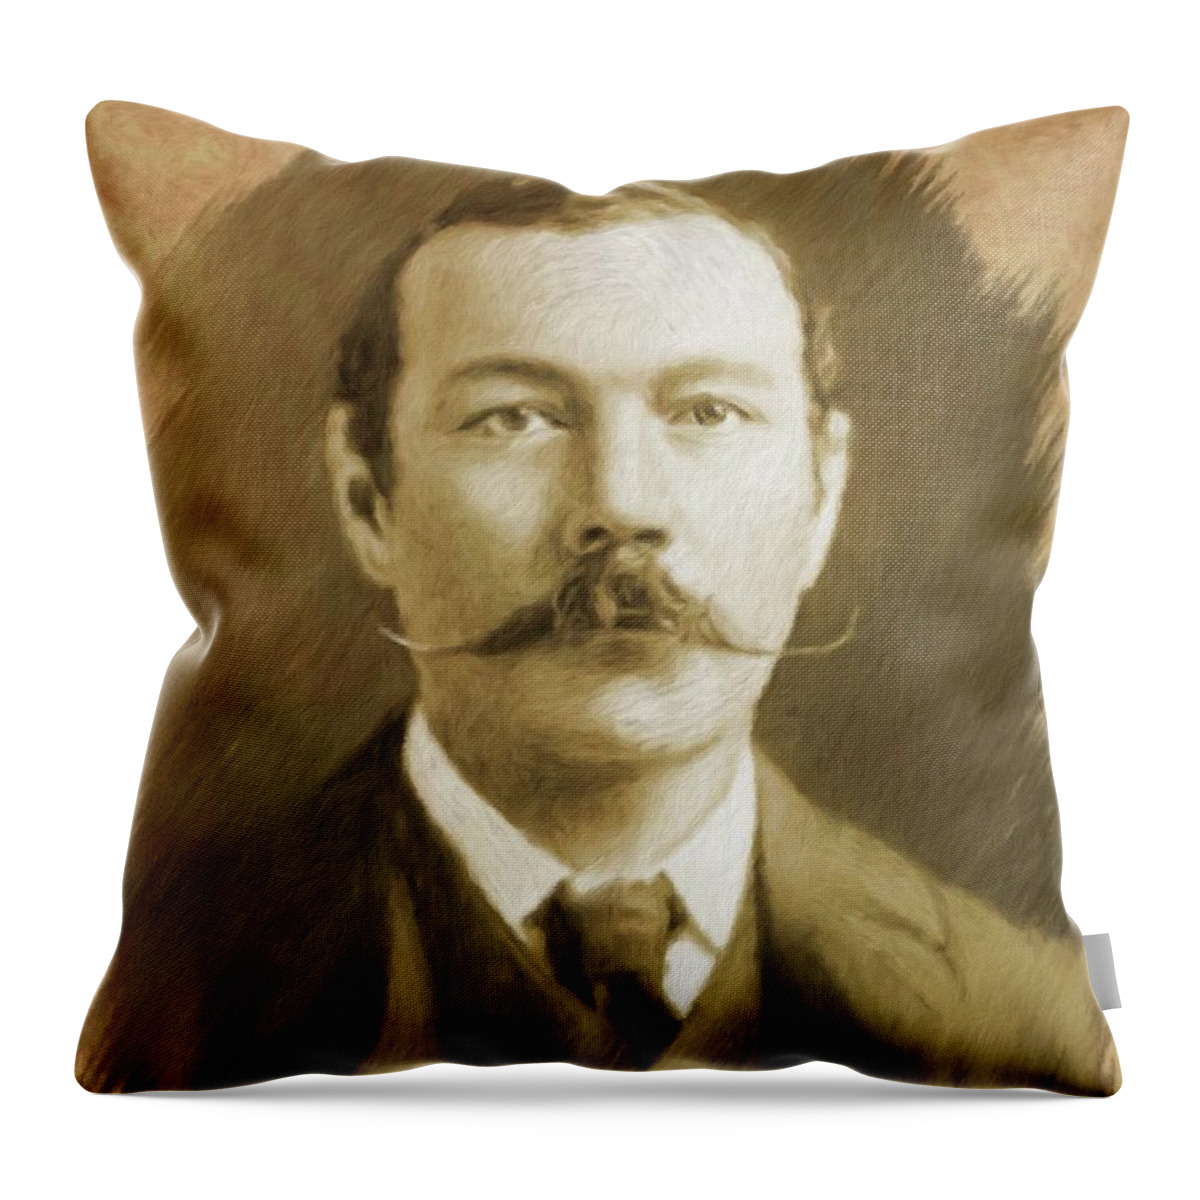 Arthur Throw Pillow featuring the painting Sir Arthur Conan Doyle #1 by Esoterica Art Agency